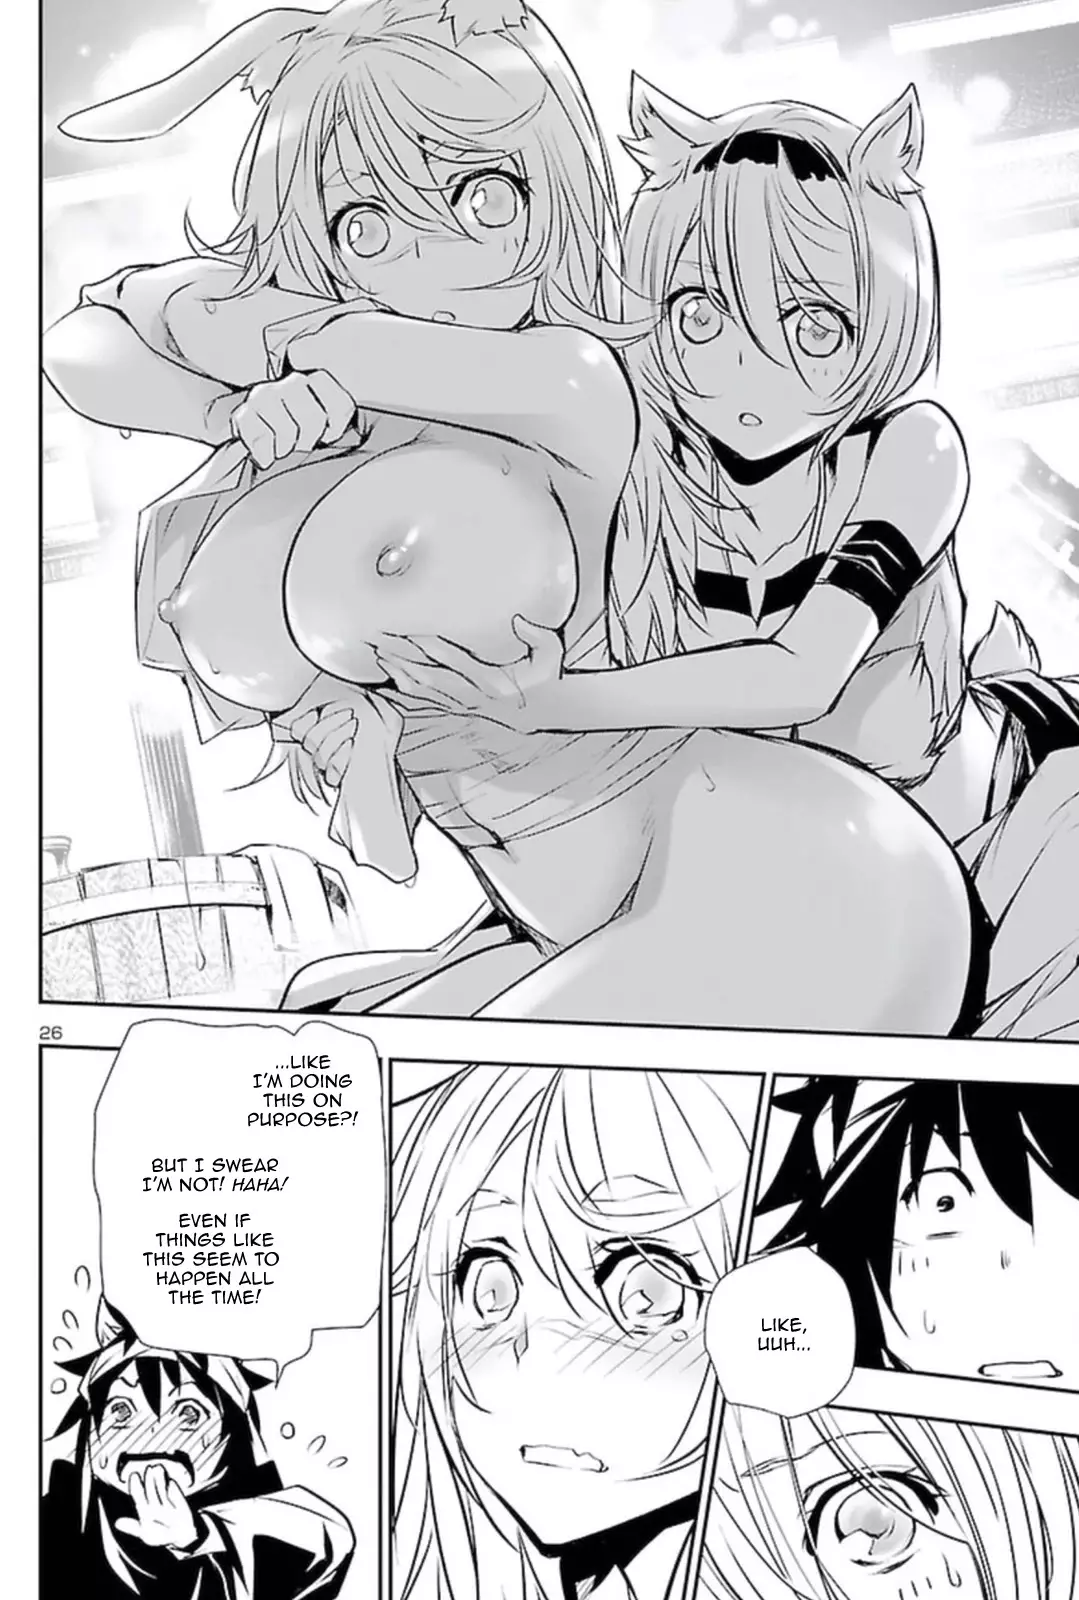 Shinju no Nectar - 54 page 25